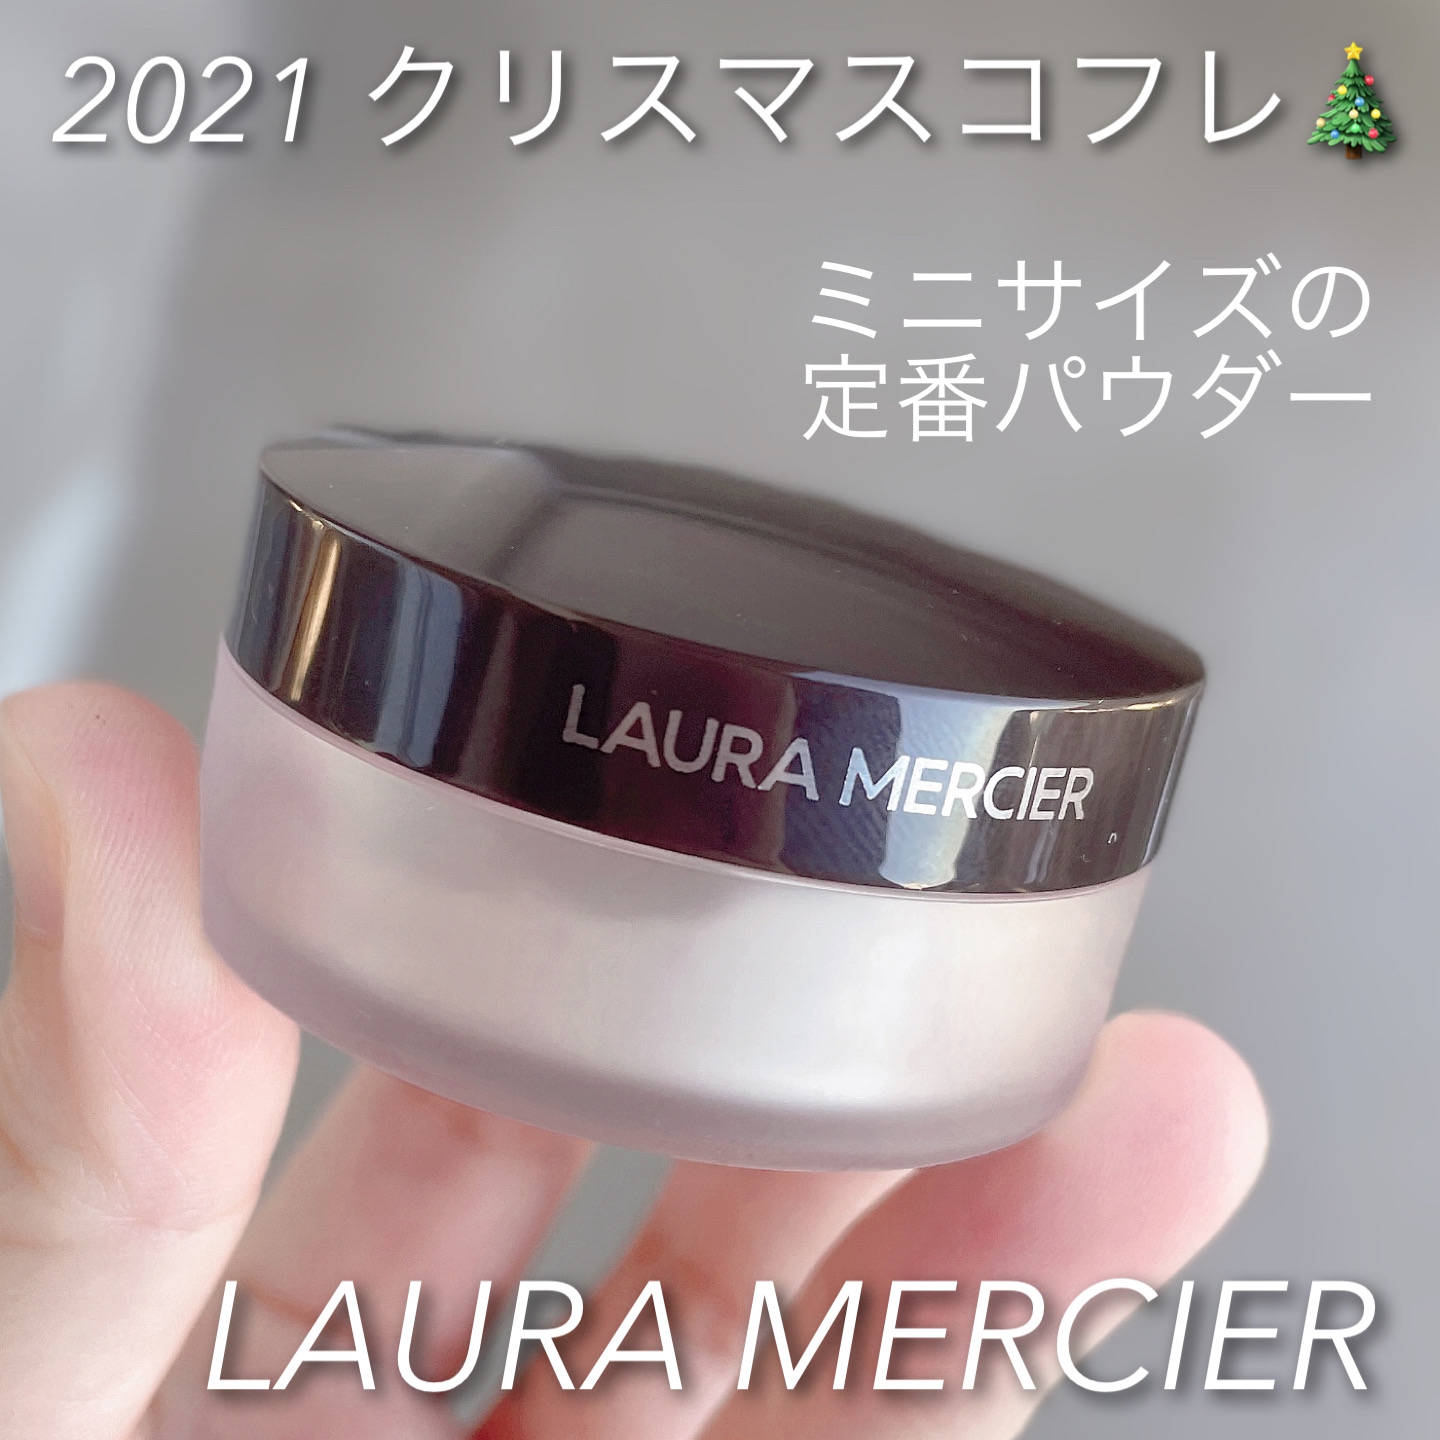 laura mercier(ローラ メルシエ)ルースセッティングパウダー トランスルーセントを使ったなゆさんのクチコミ画像1